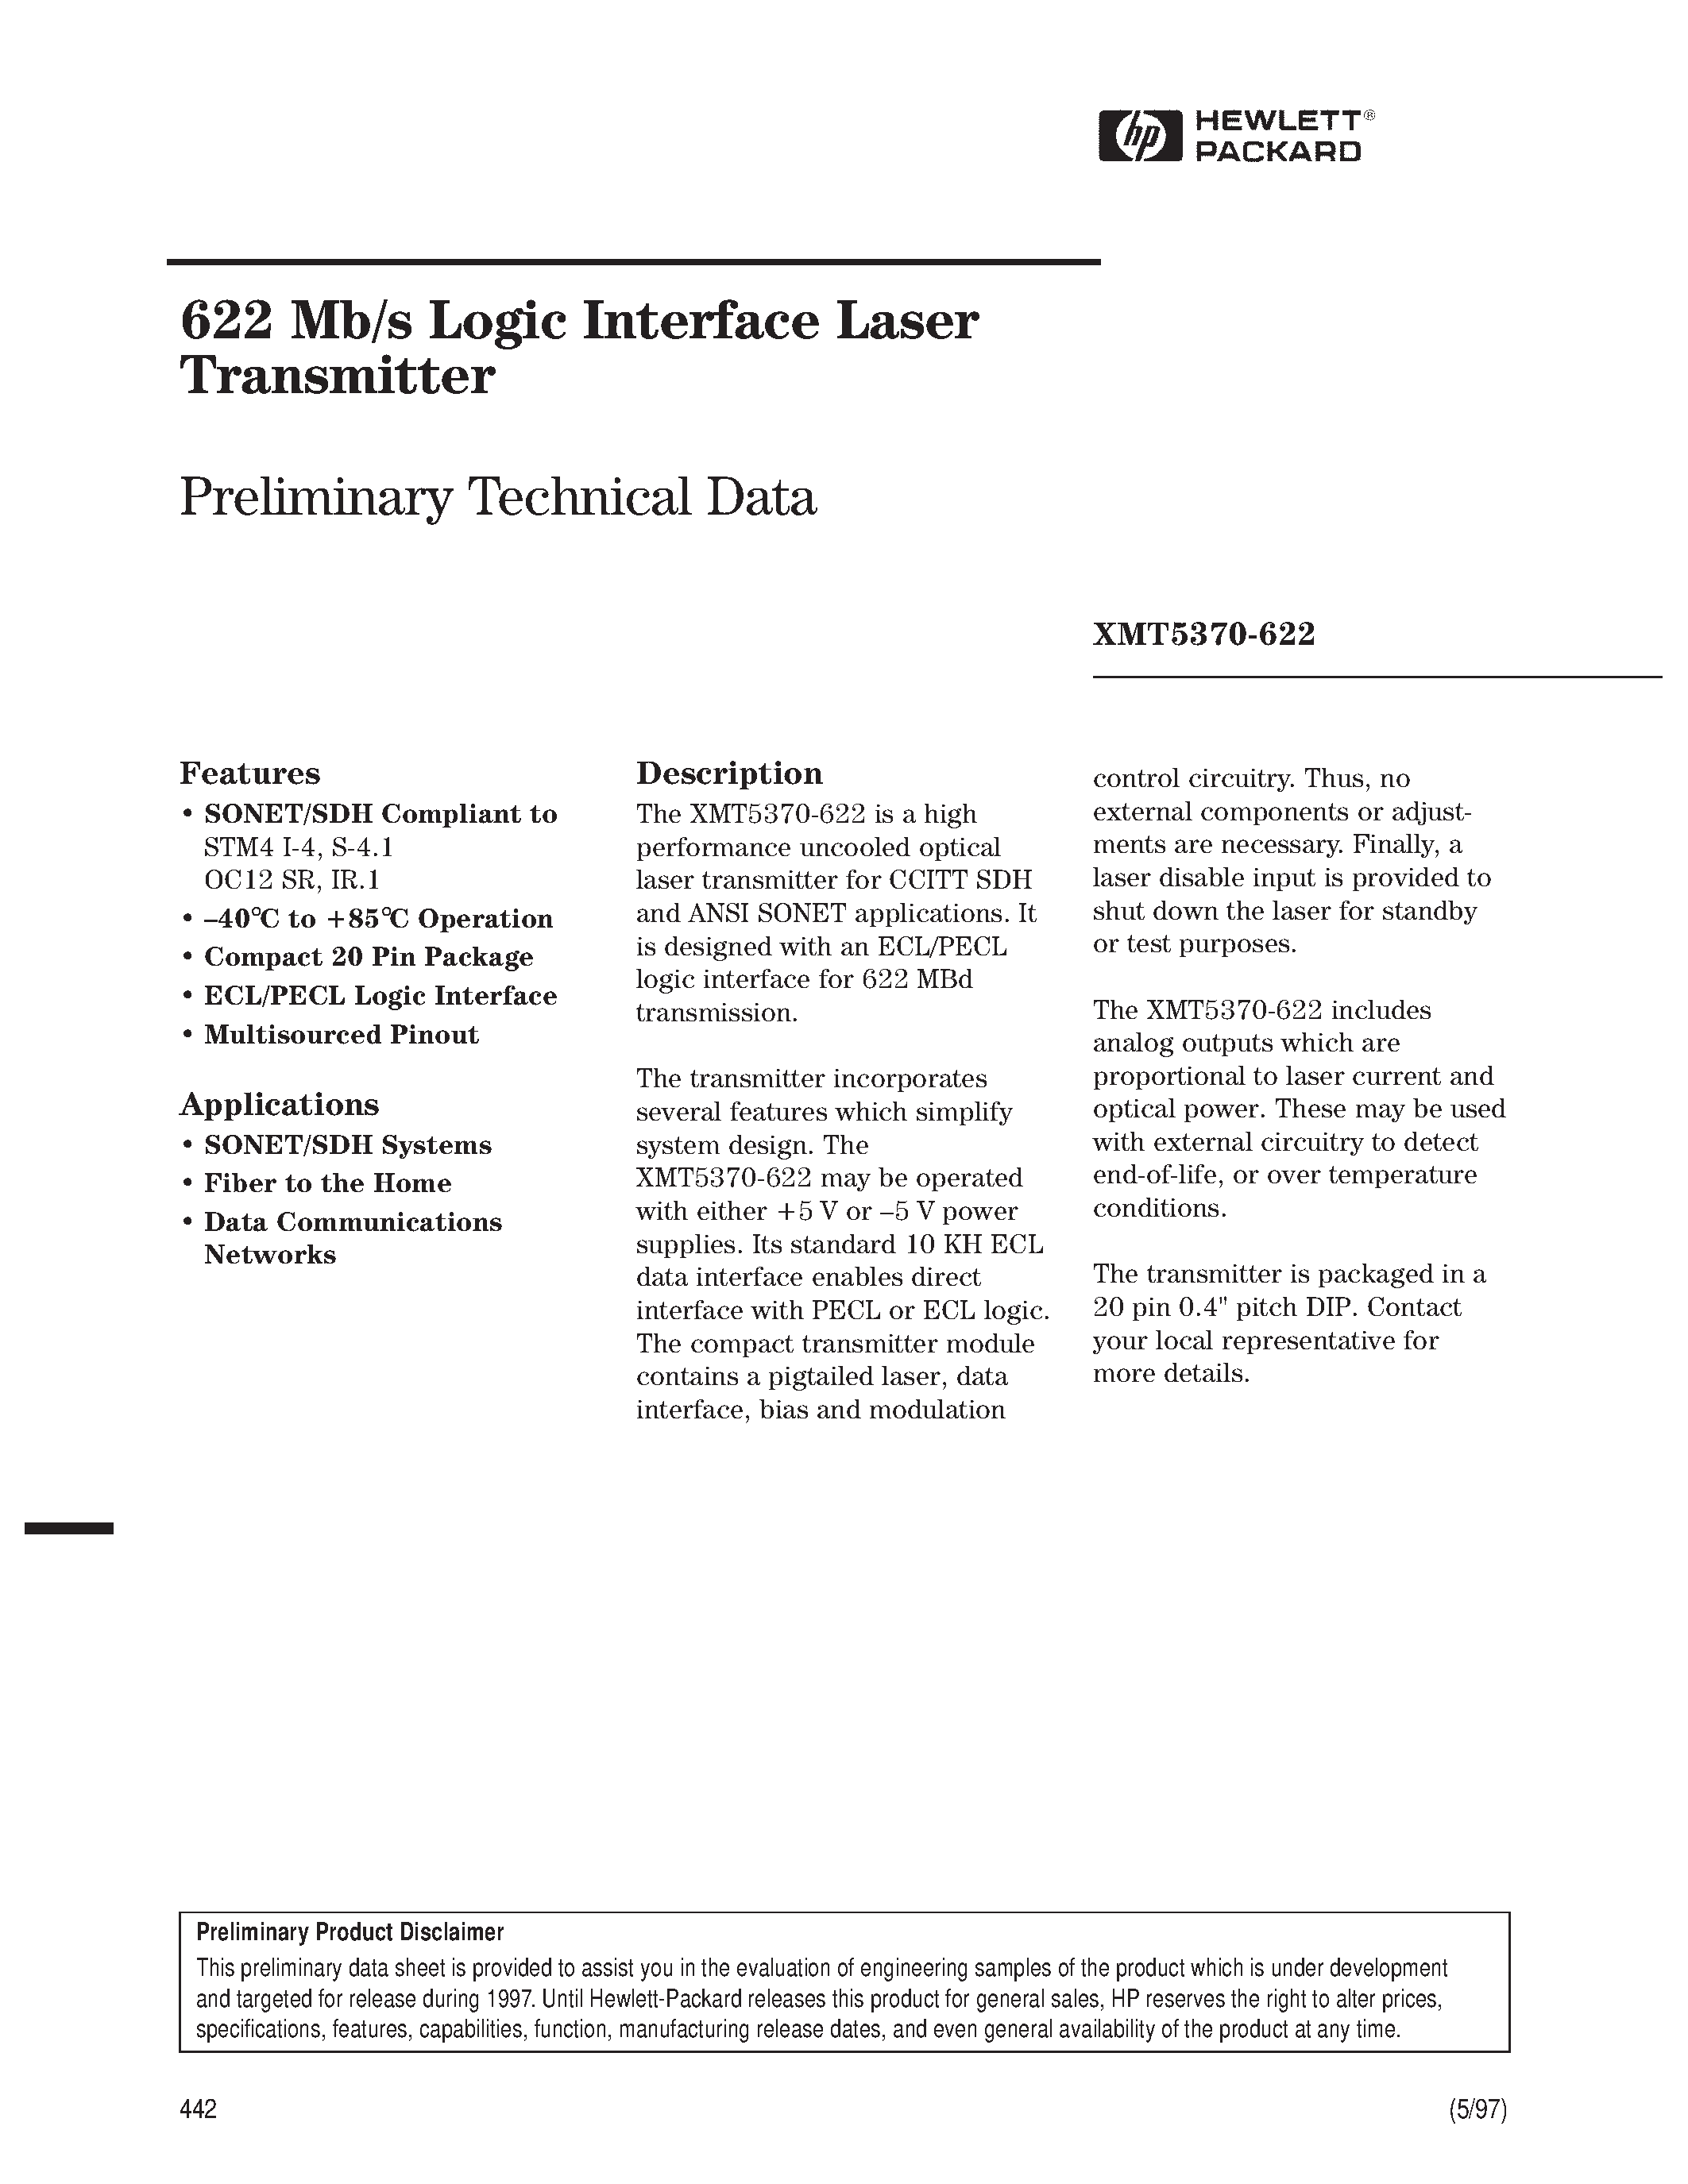 Datasheet XMT5160B-622 - 622 Mb/s Logic Interface Laser Transmitter page 1